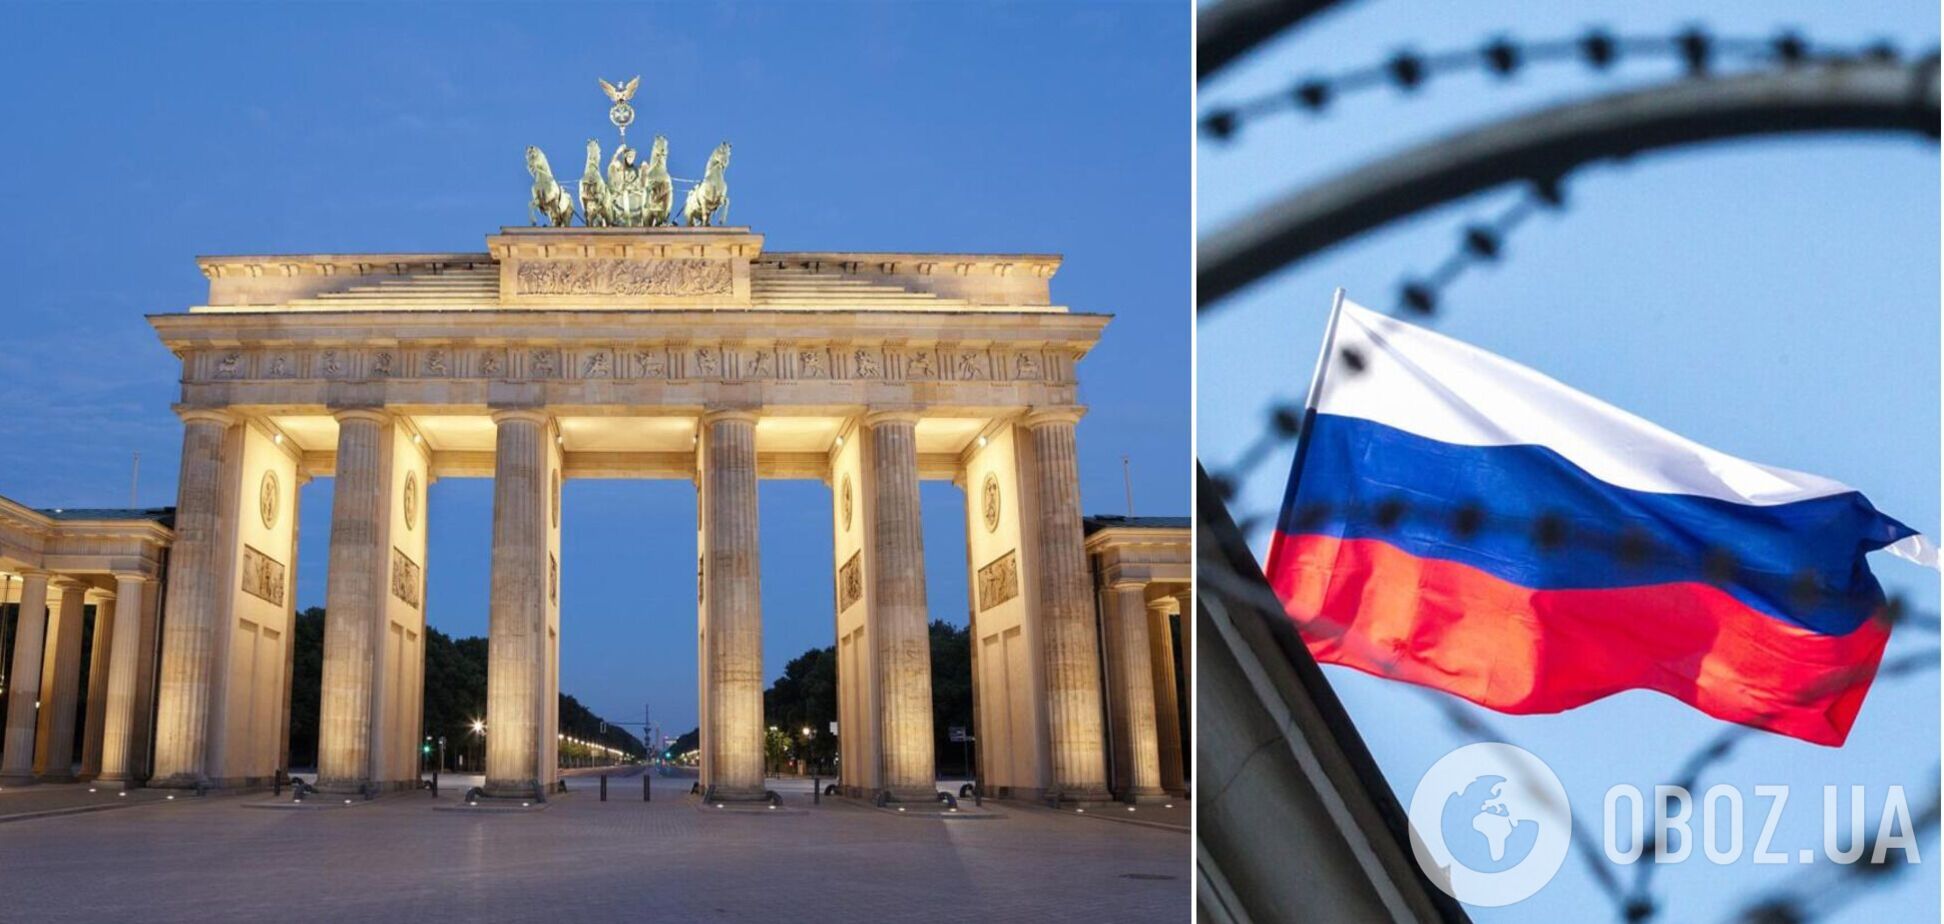 Российские флаги запретили на мероприятиях в столице Германии